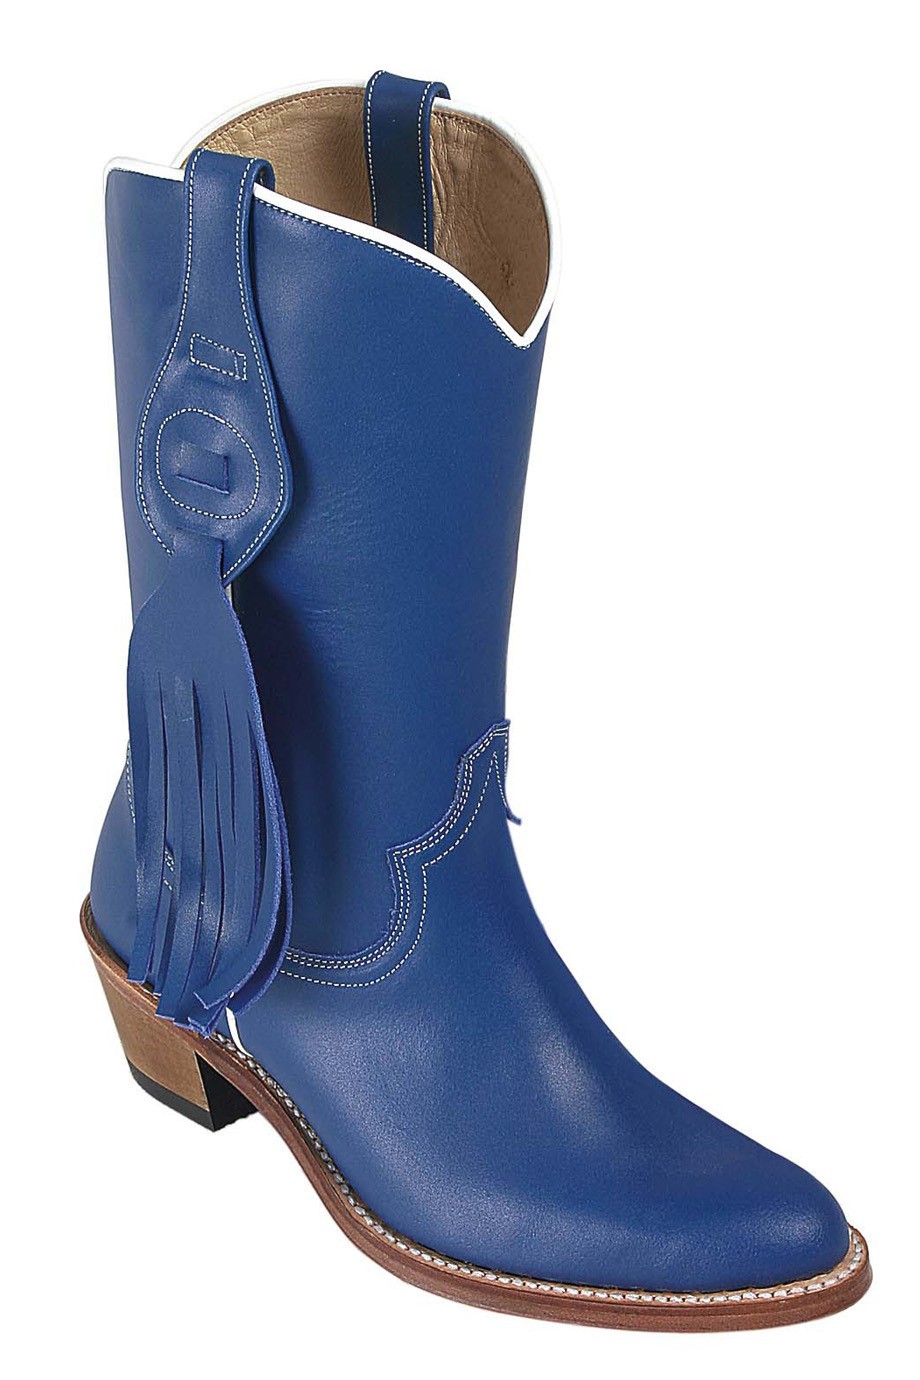 blue suede cowboy boots